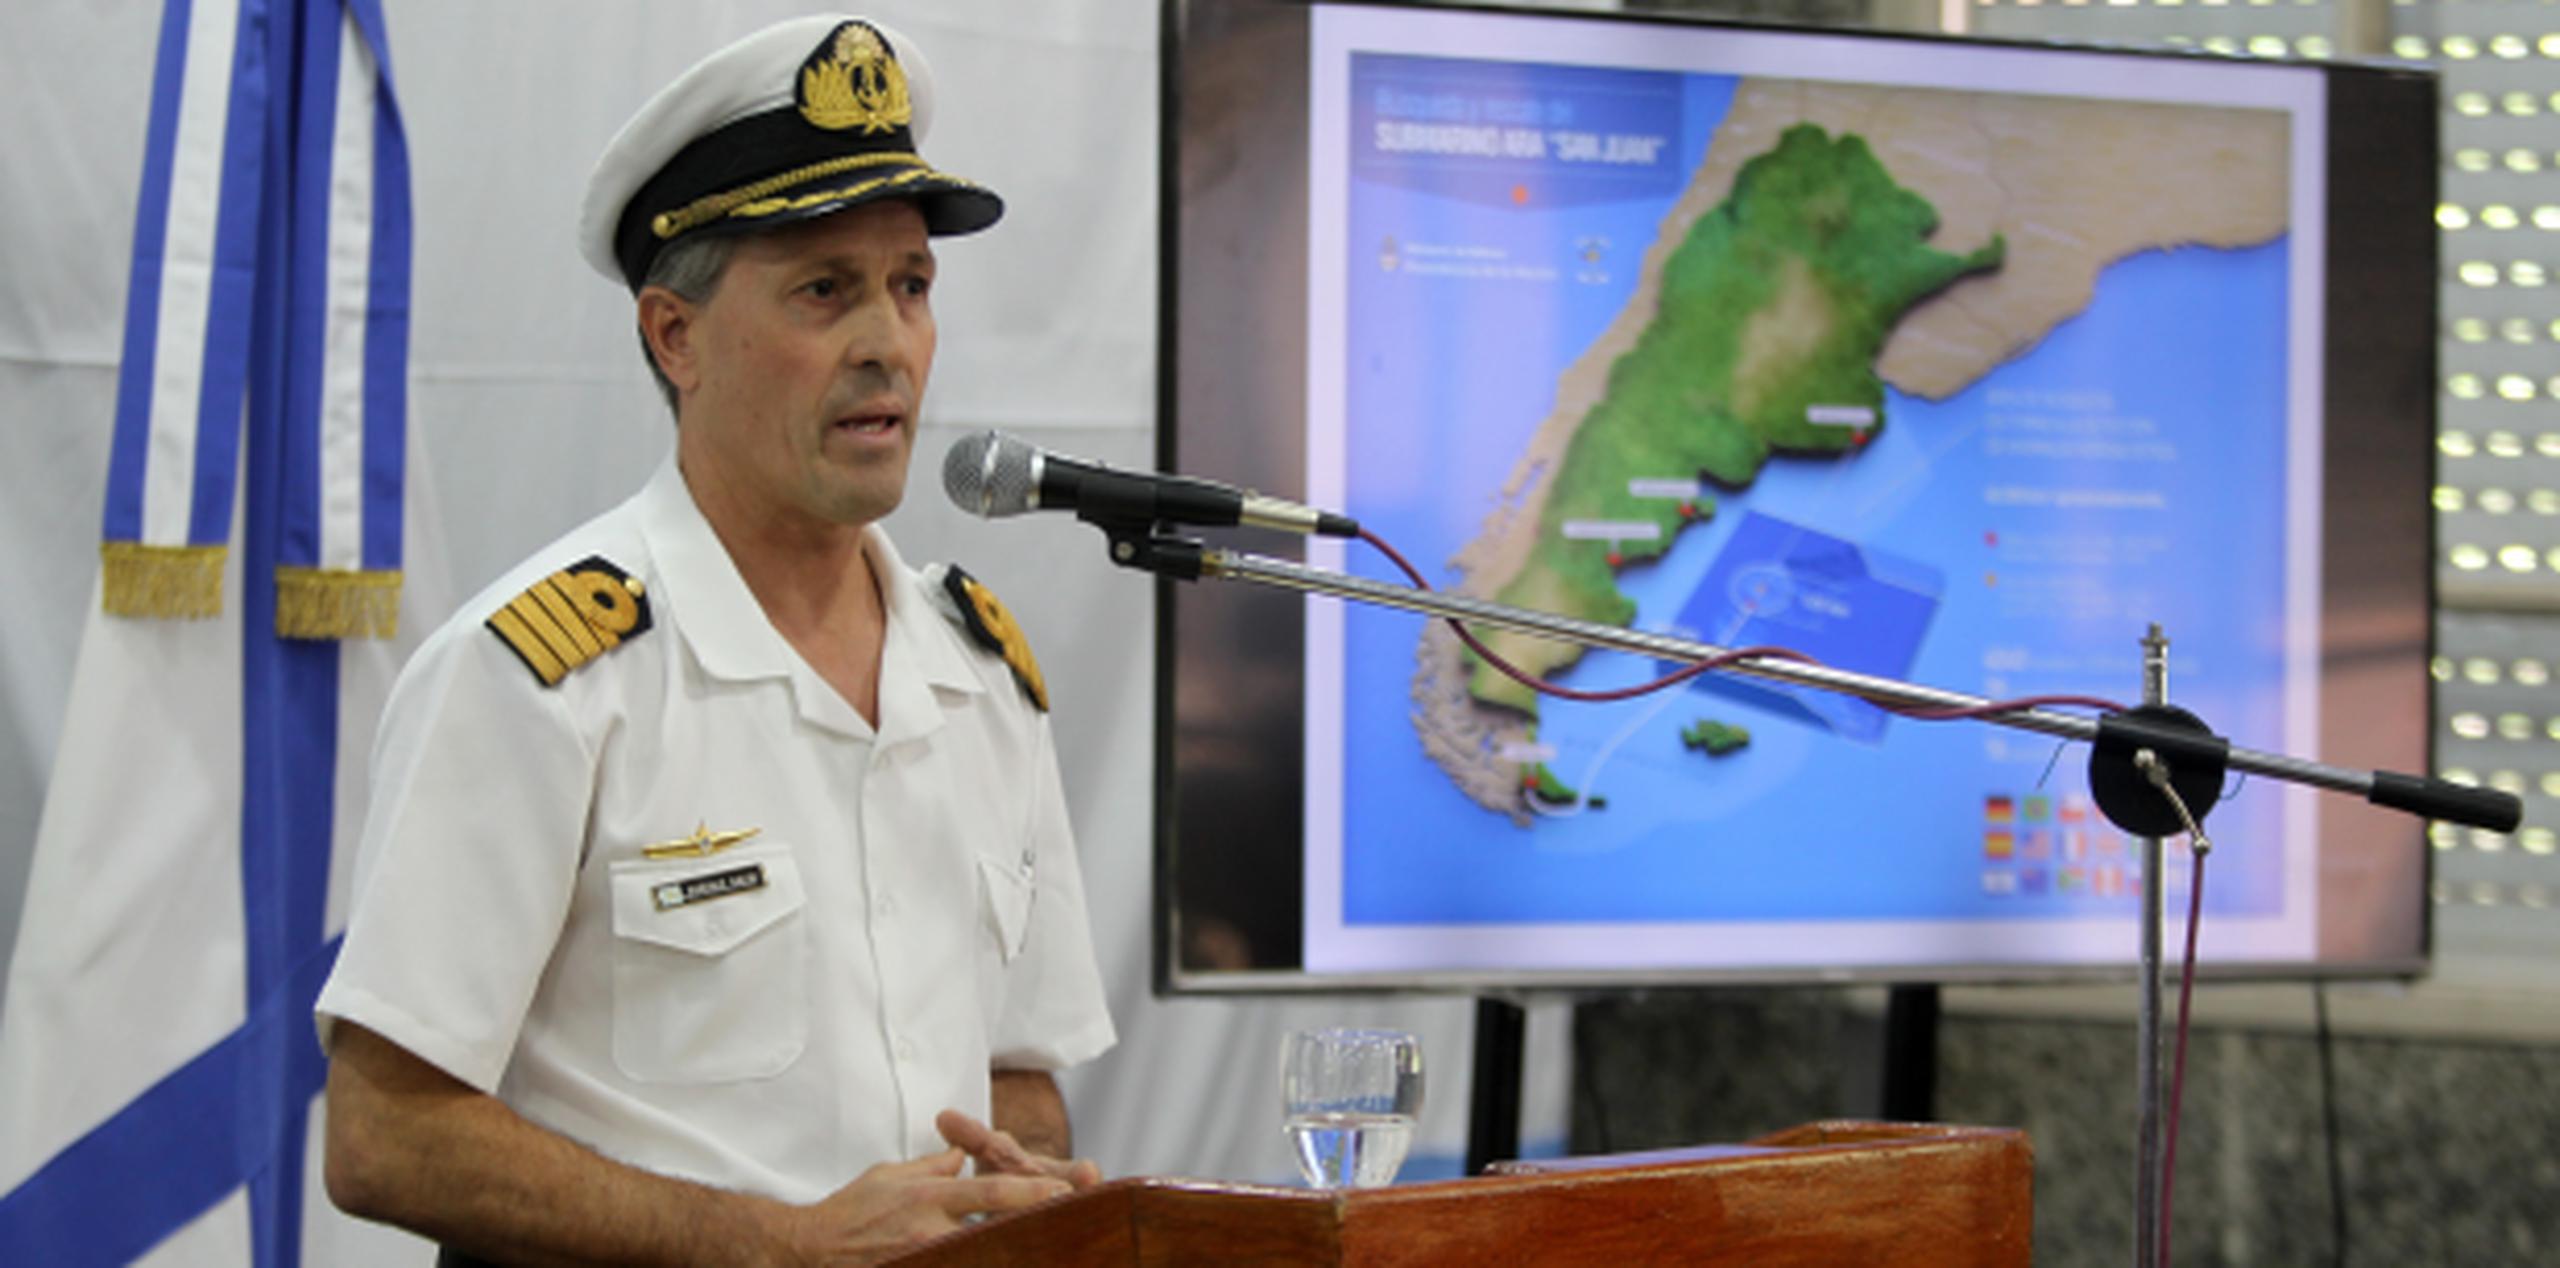 Enrique Balbi, portavoz de la Armada argentina, habla durante la conferencia de prensa. (EFE/Carlota Ciudad)